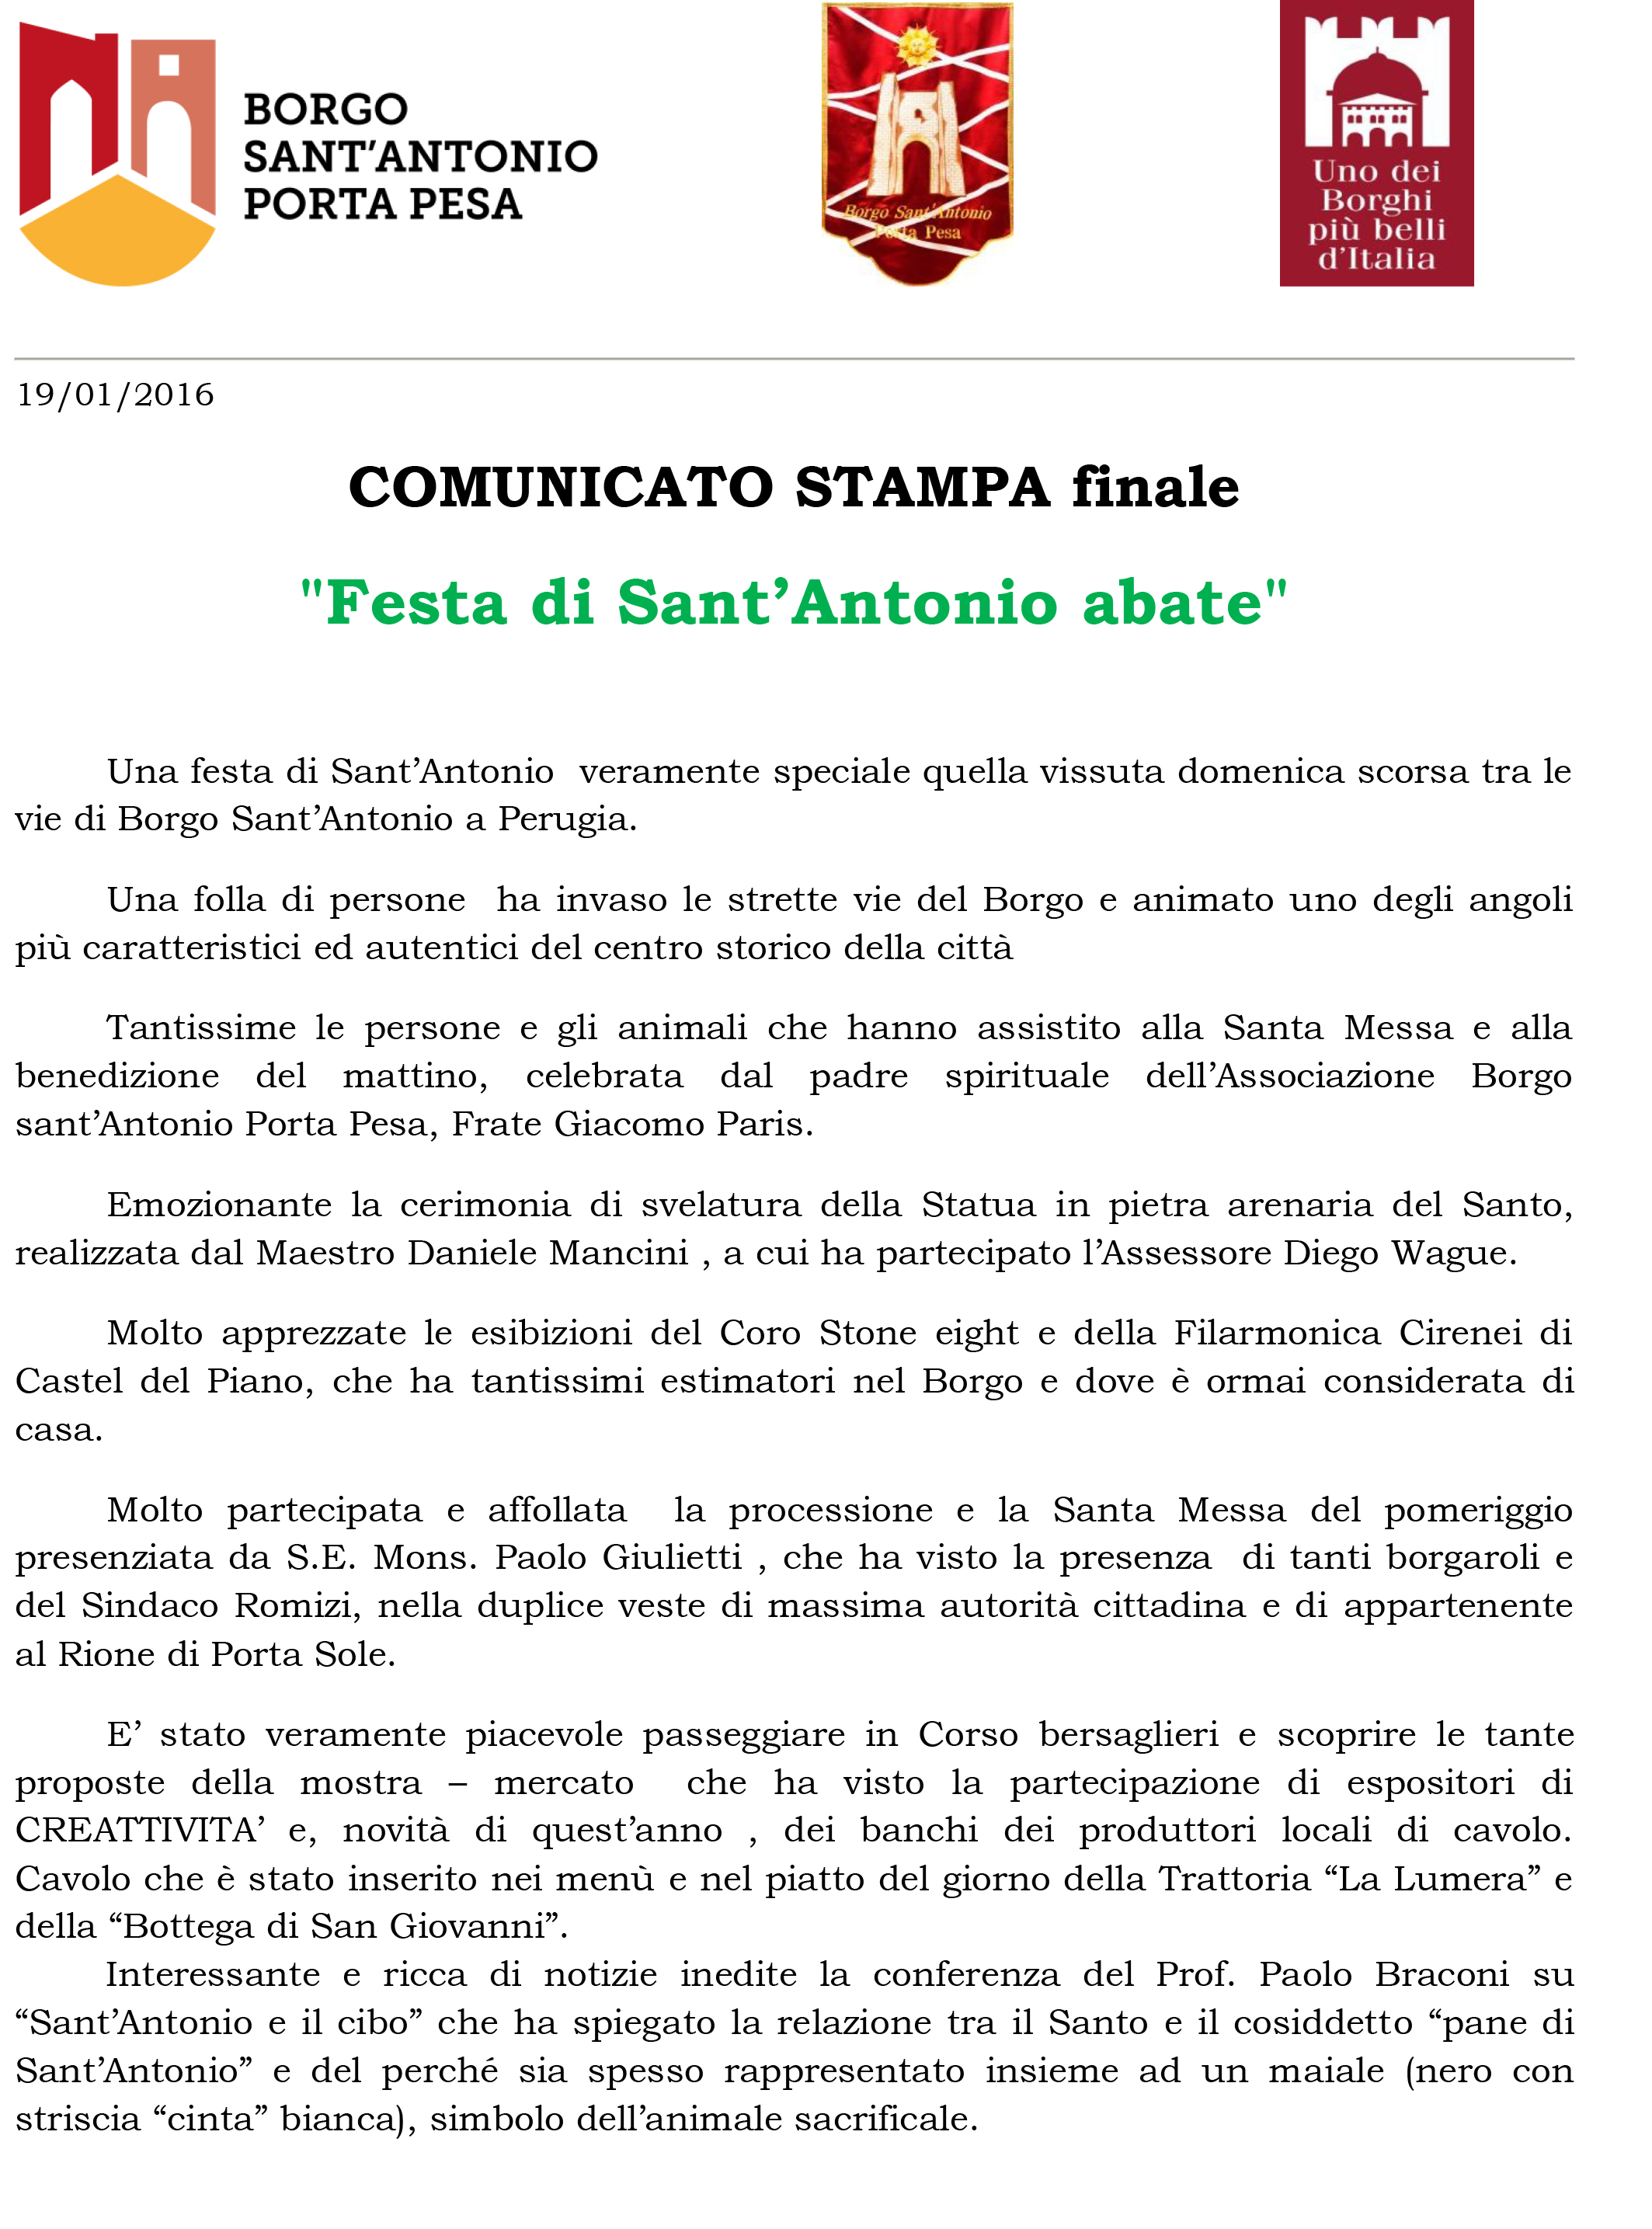 COMUNICATO STAMPA Festa Sant'Antonio finale-1